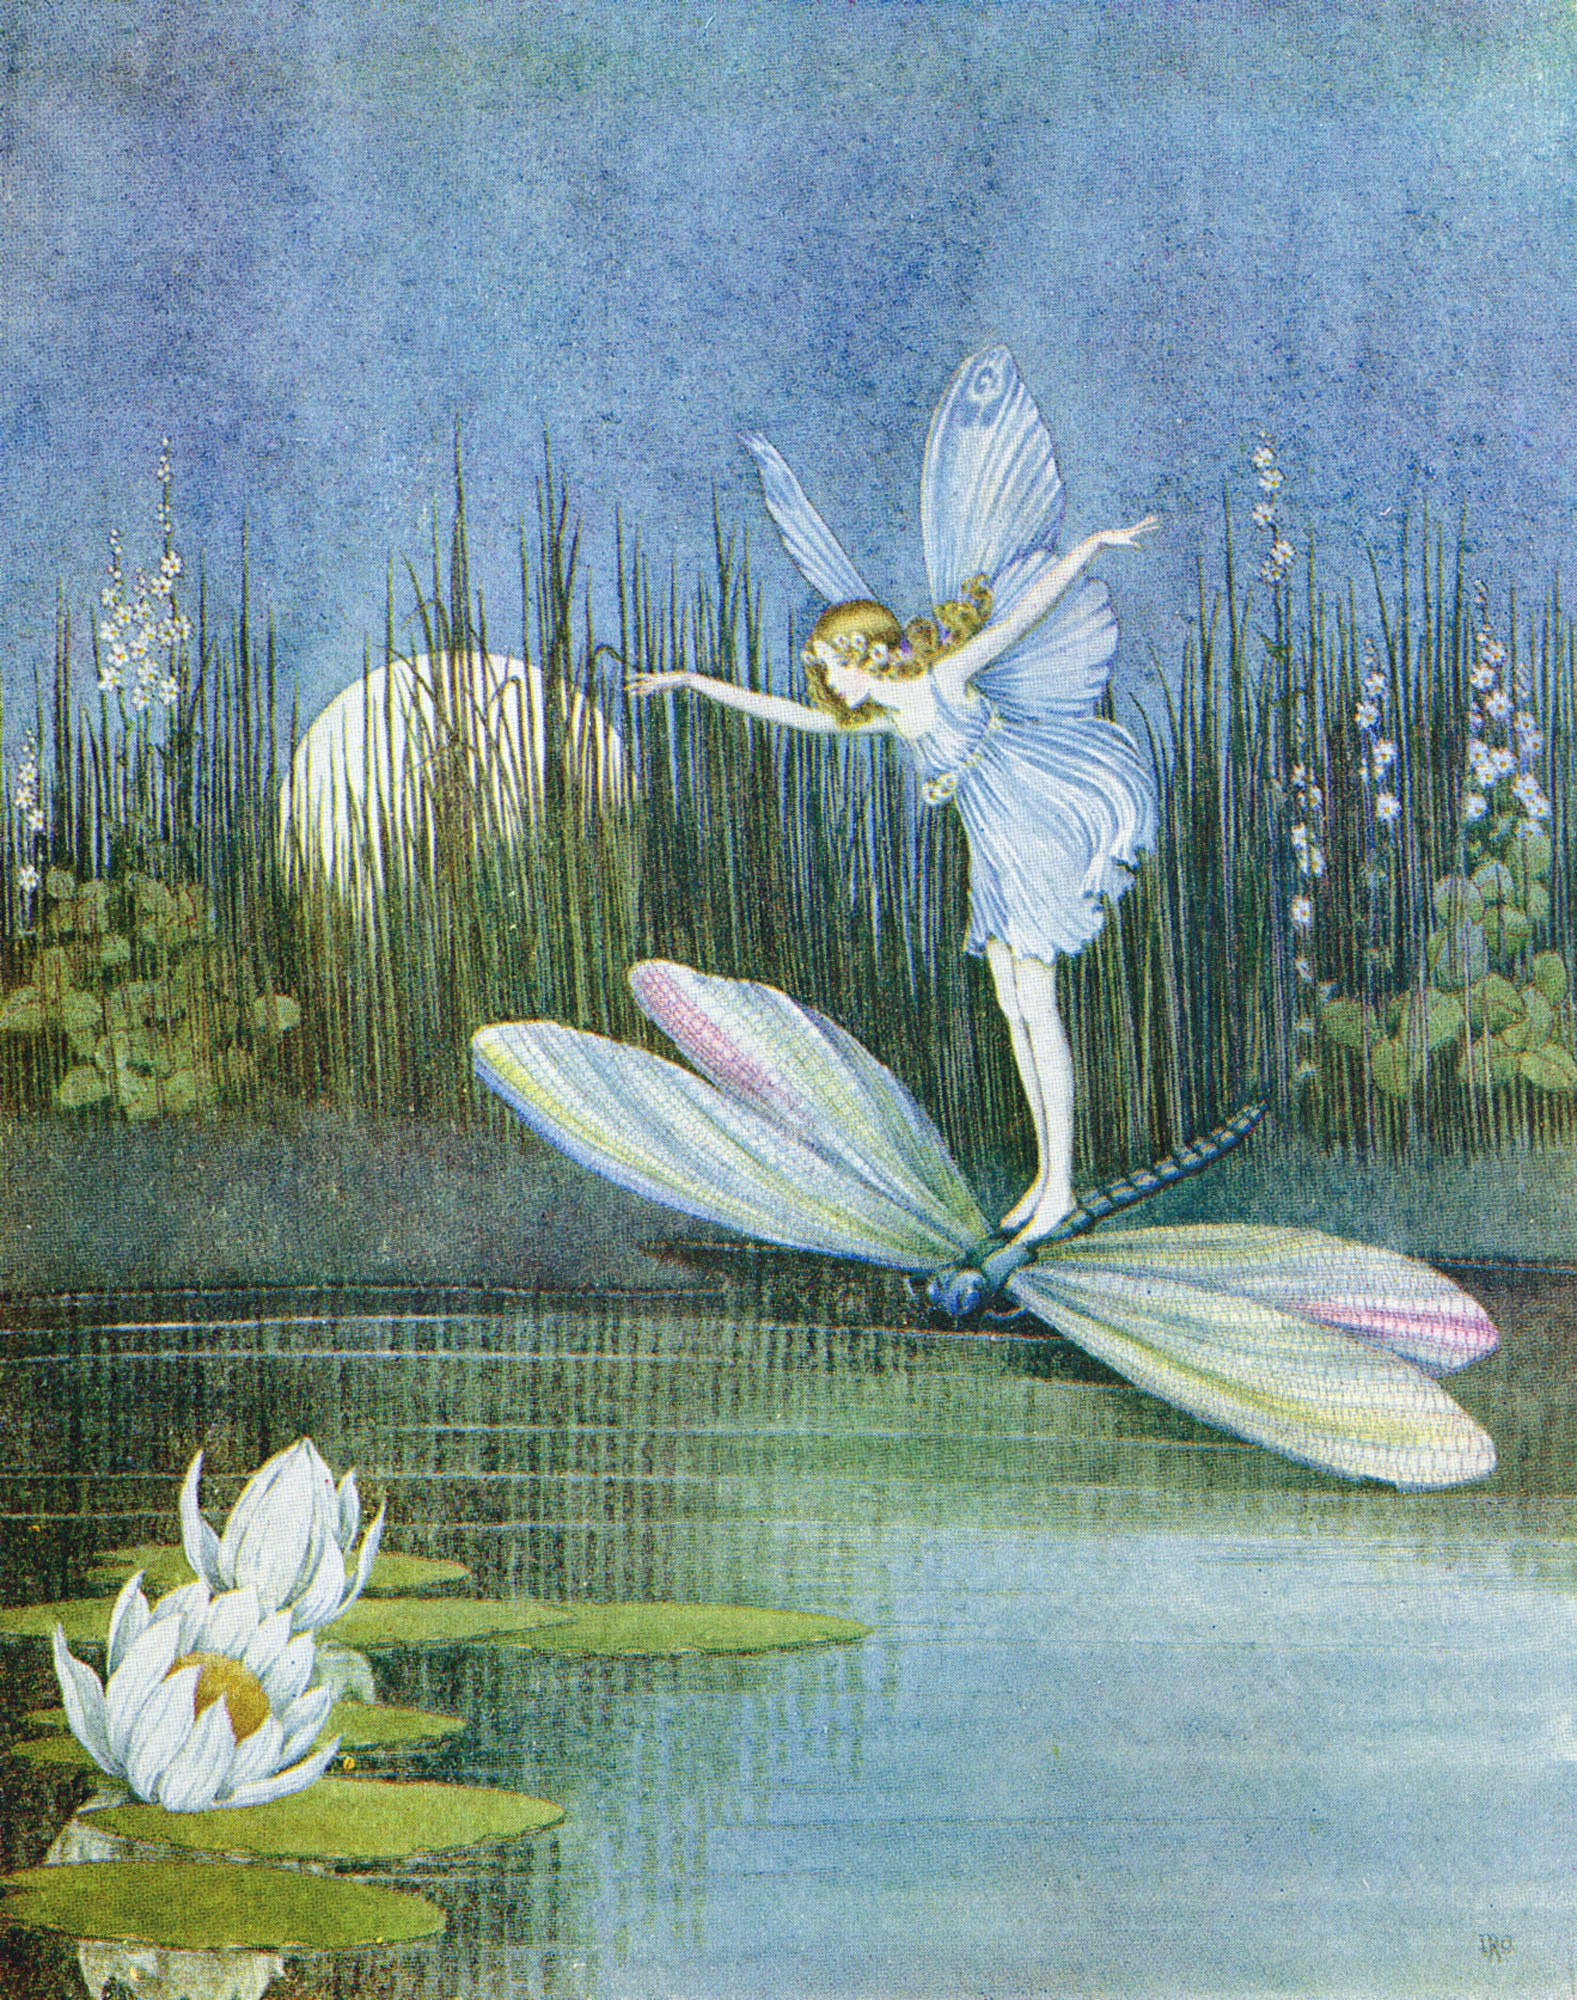 Fairyland tales, Fairytale stories, Fairy illustrations, Magical fairy world, 1580x2000 HD Handy